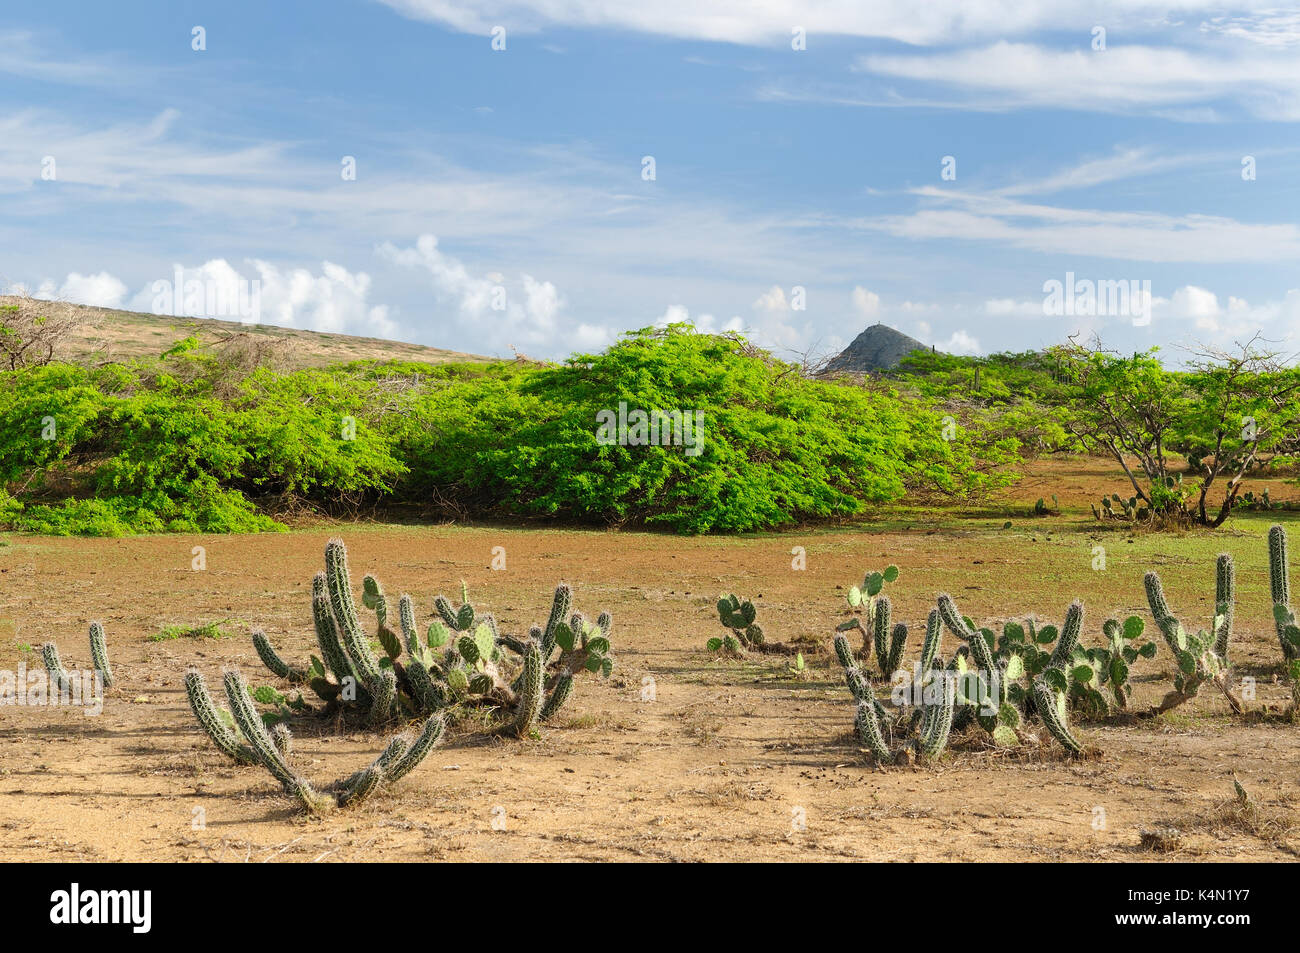 La Colombie, le désert côtier sauvage de la péninsule de Guajira près du Cabo de la Vela resort. Colombie, désert côtier sauvage de la péninsule de Guajira près du Banque D'Images